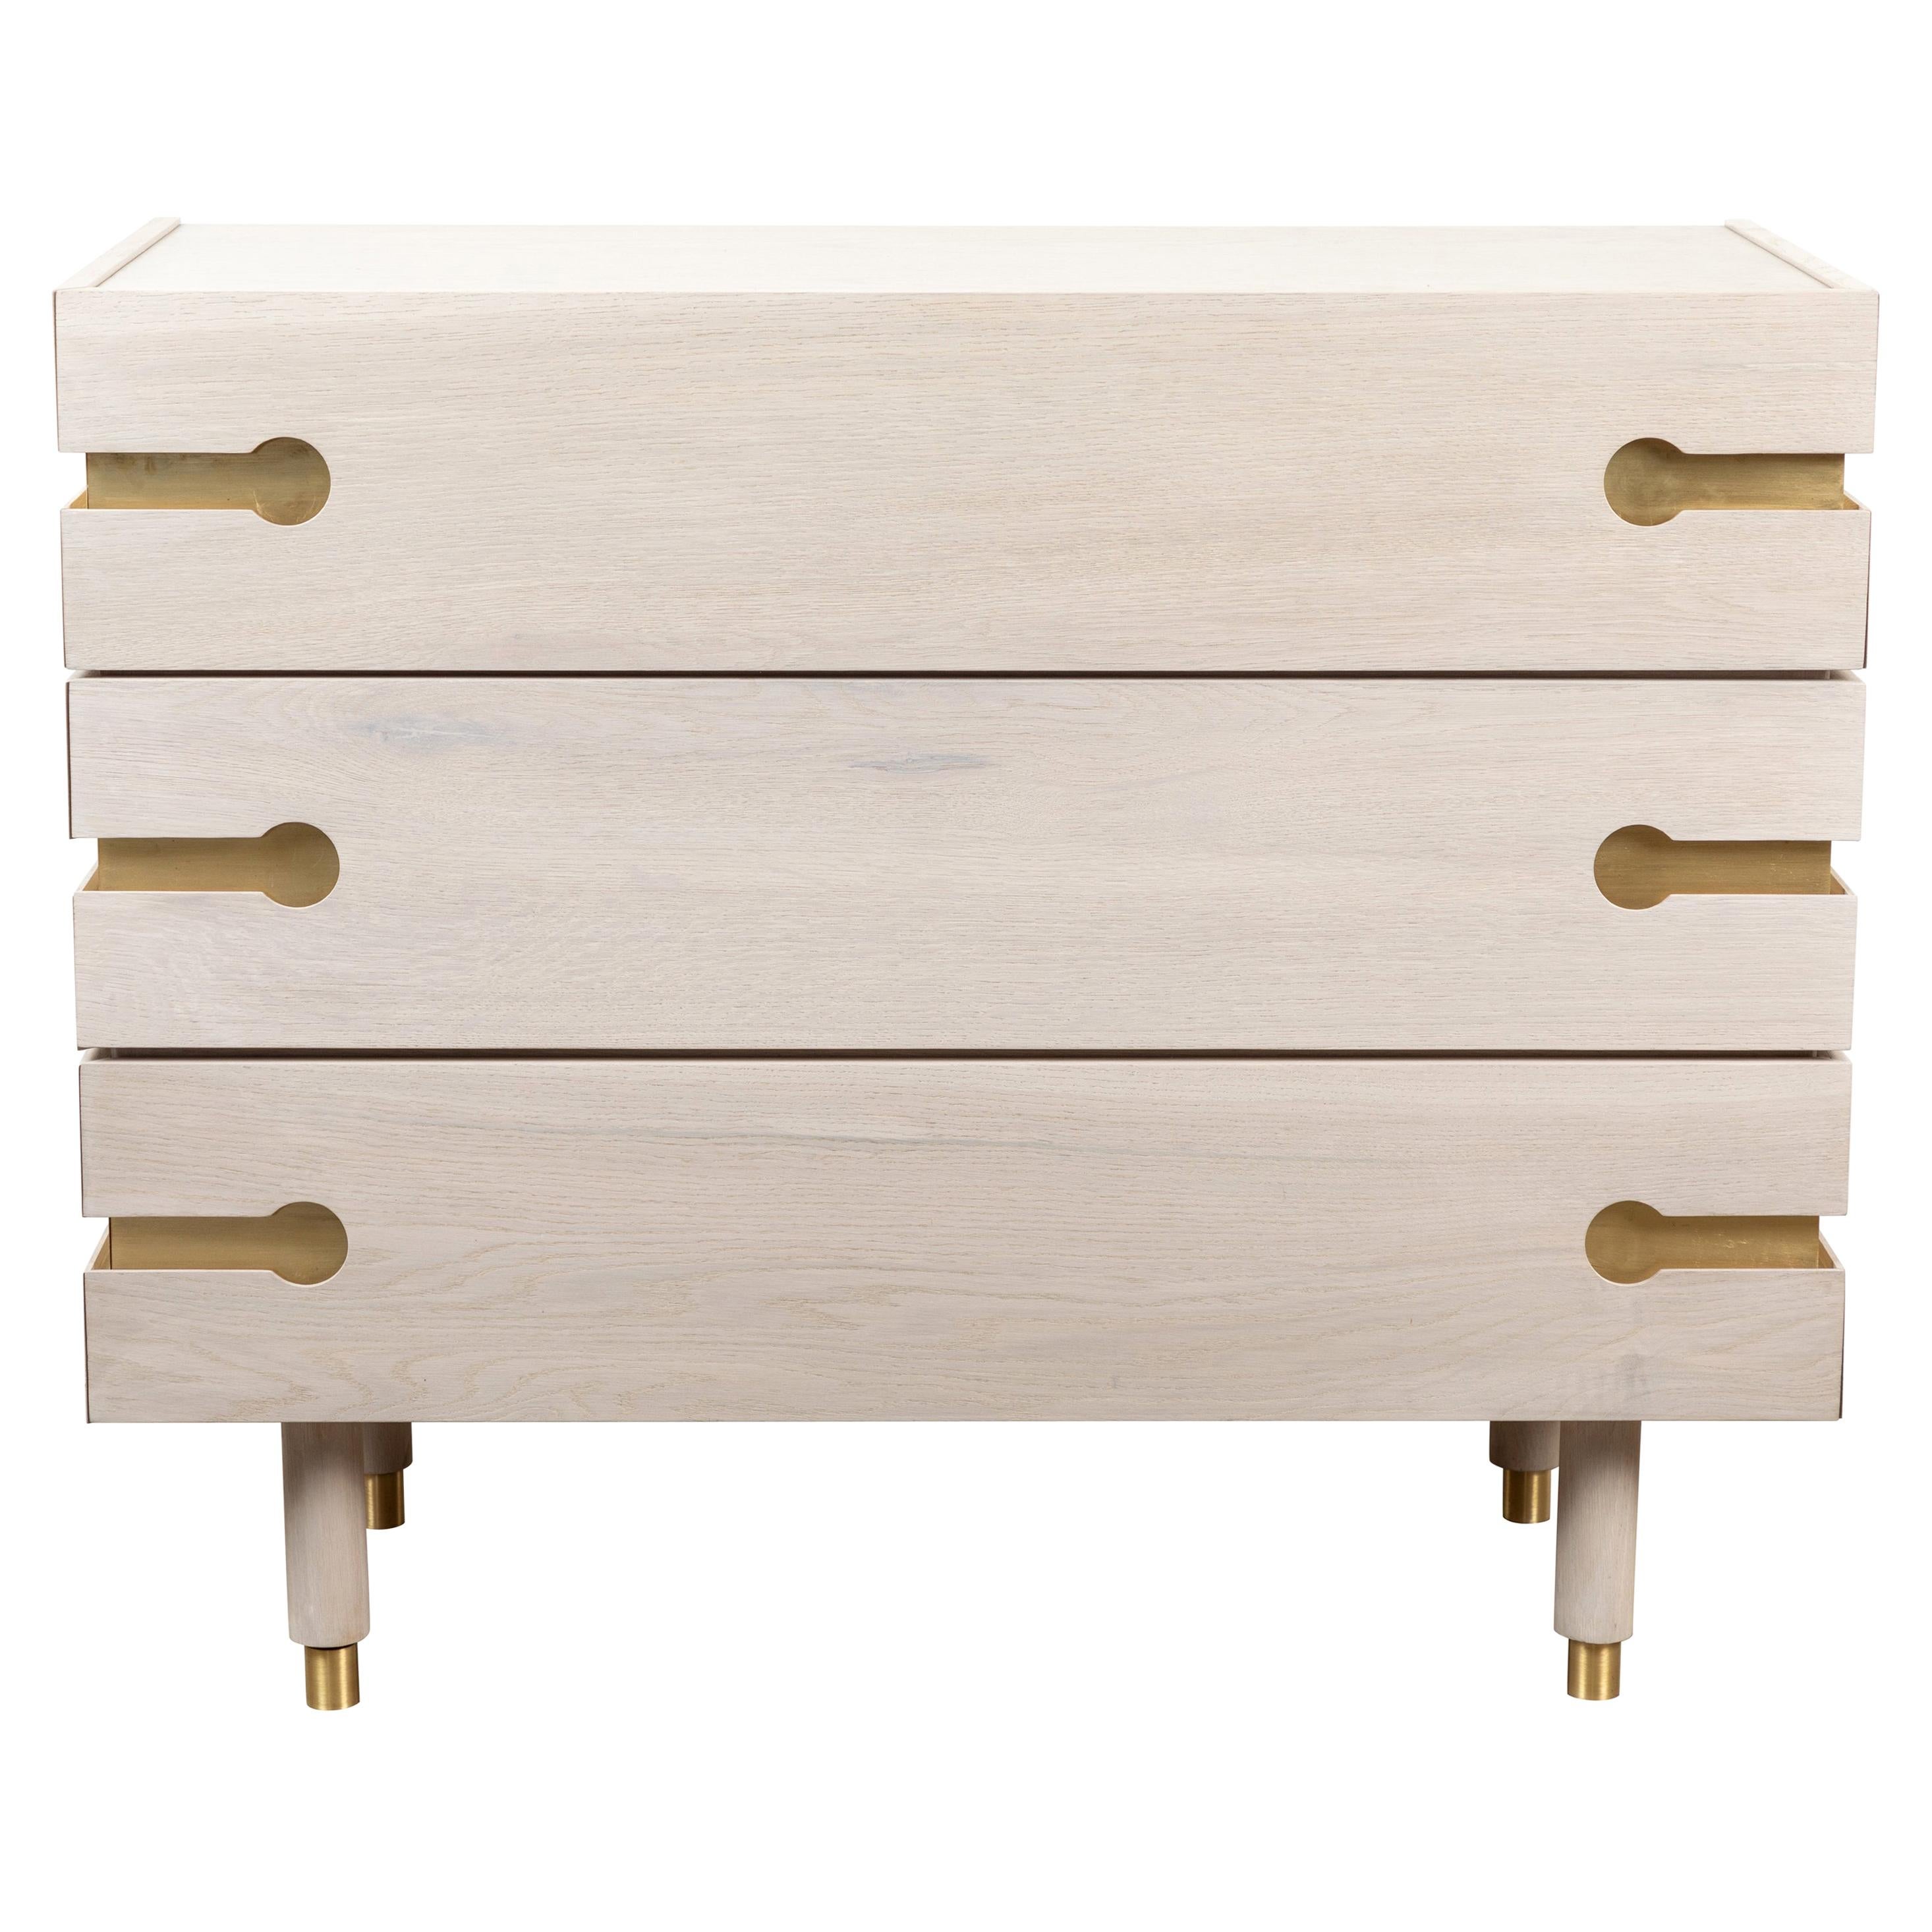 Brass Niguel Dresser By Lawson Fenning, White And Brass Dresser